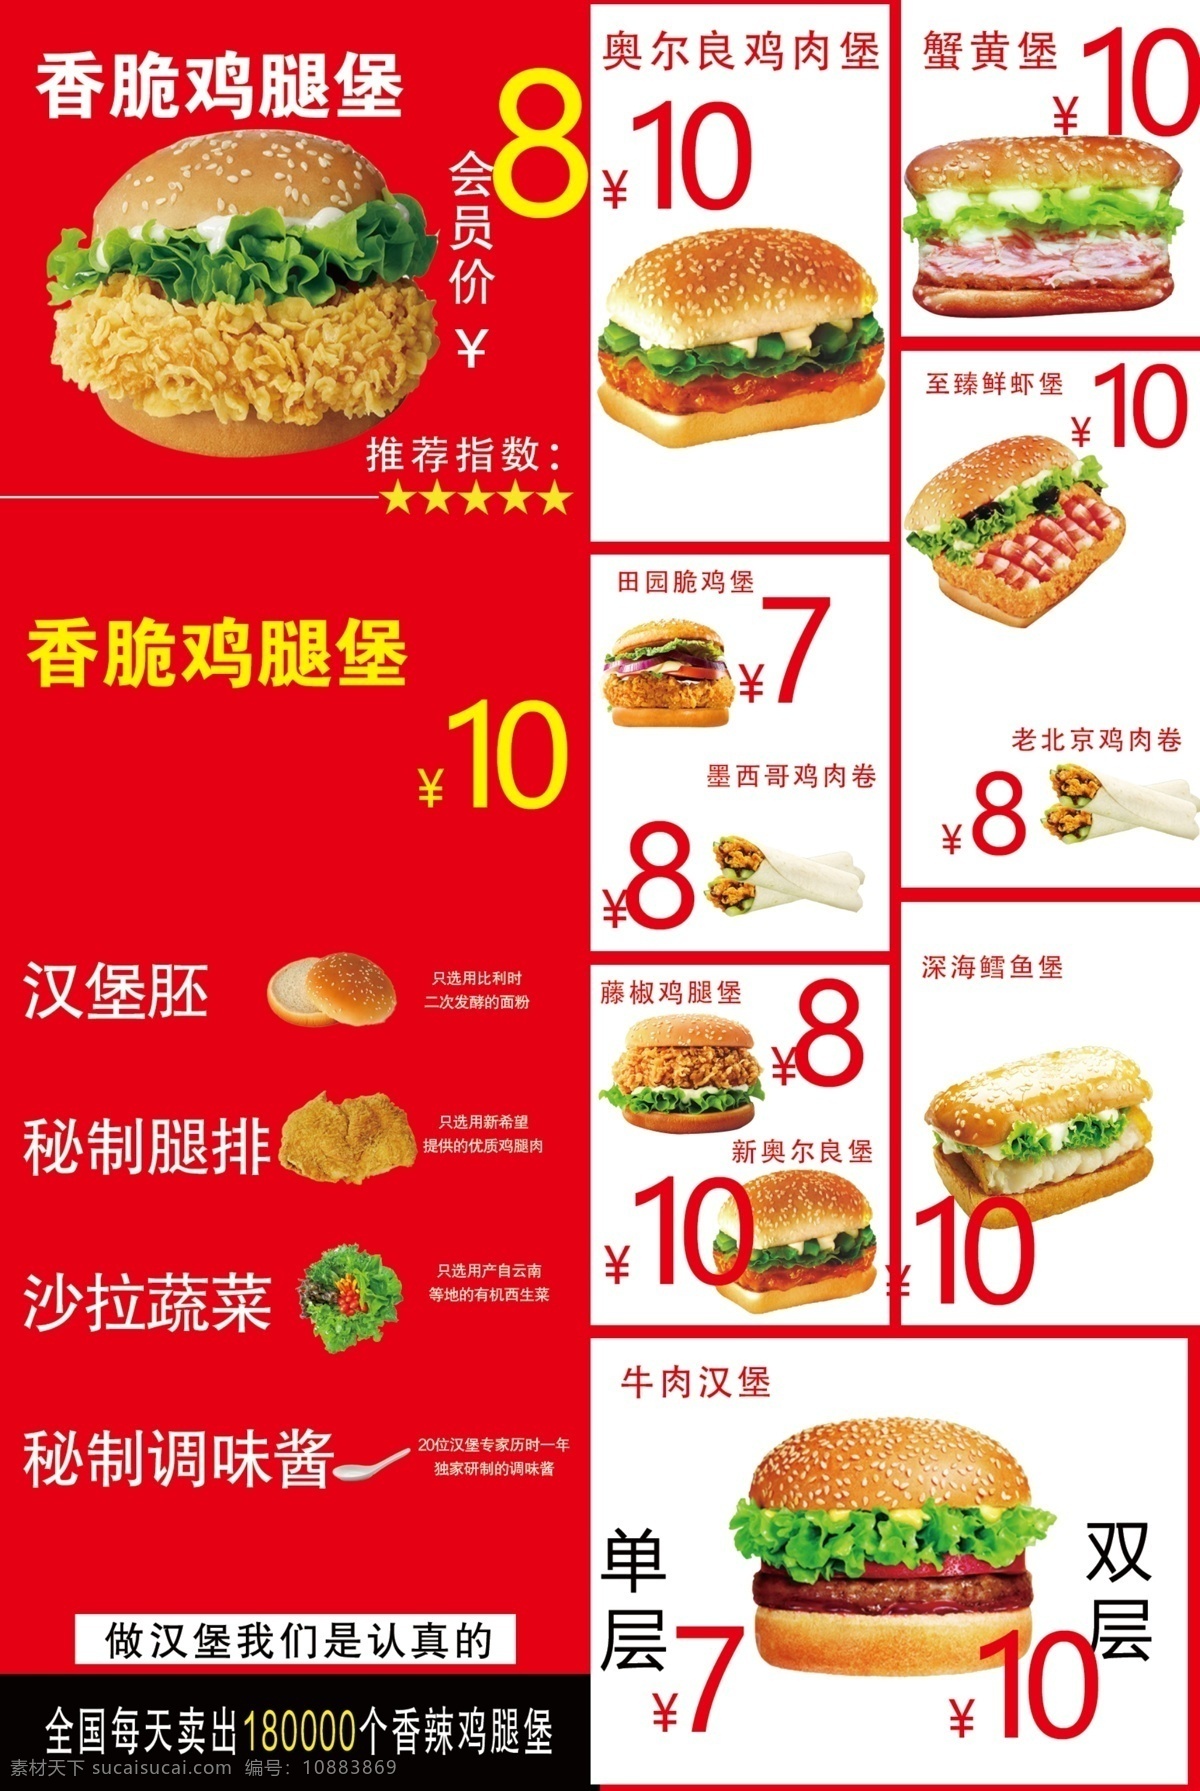 汉堡灯箱图片 汉堡价格单 汉堡灯箱 汉堡海报 汉堡 灯箱 汉堡价格表 菜单菜谱